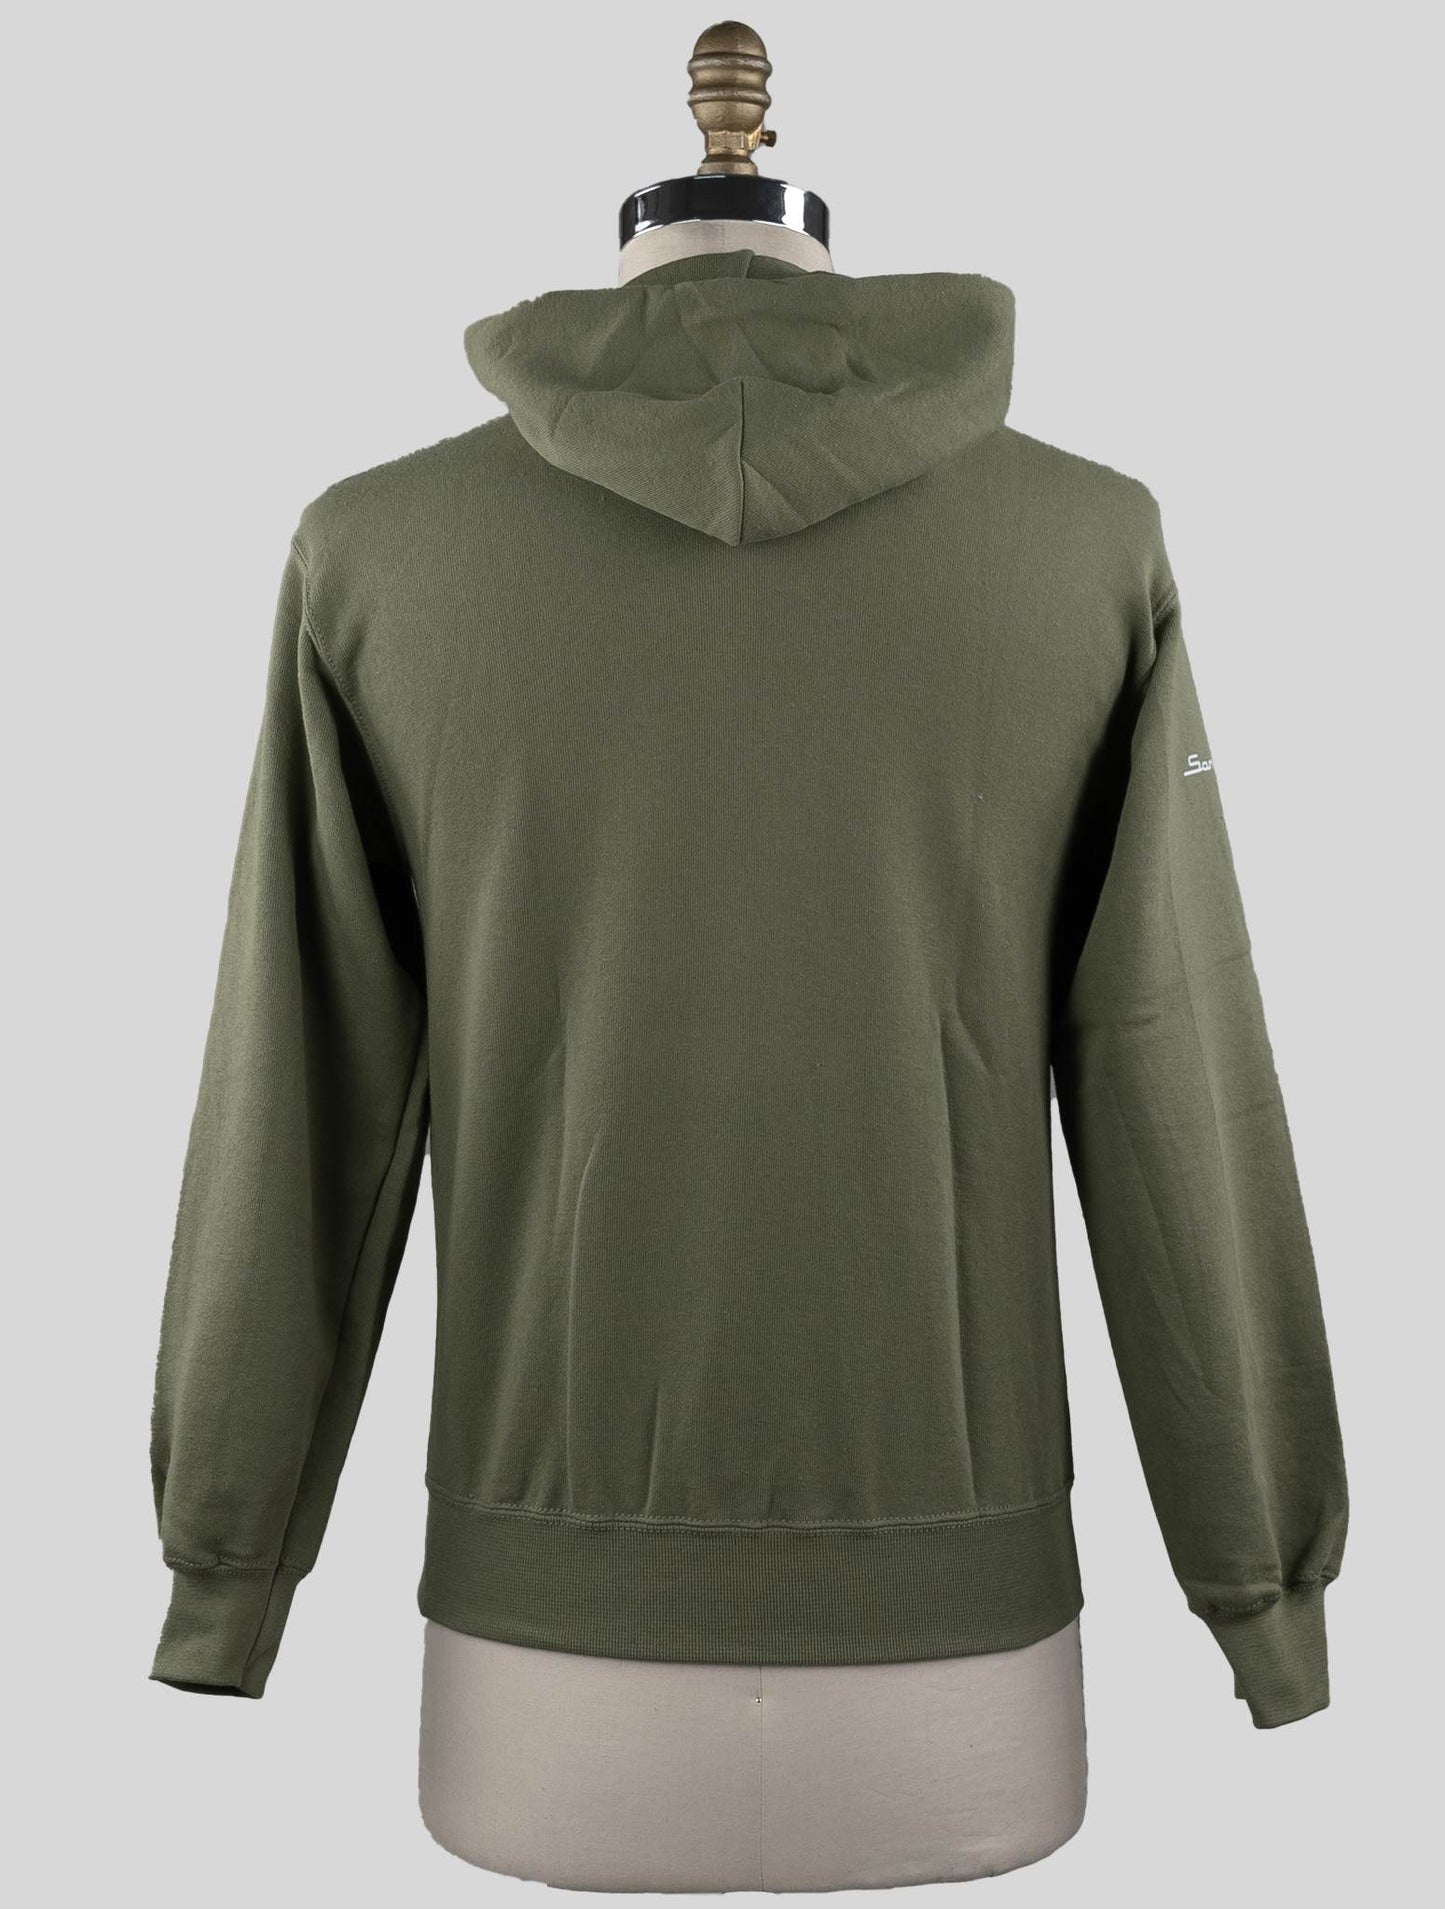 Sartorio napoli zaļās kokvilnas džemperis īpašais izdevums